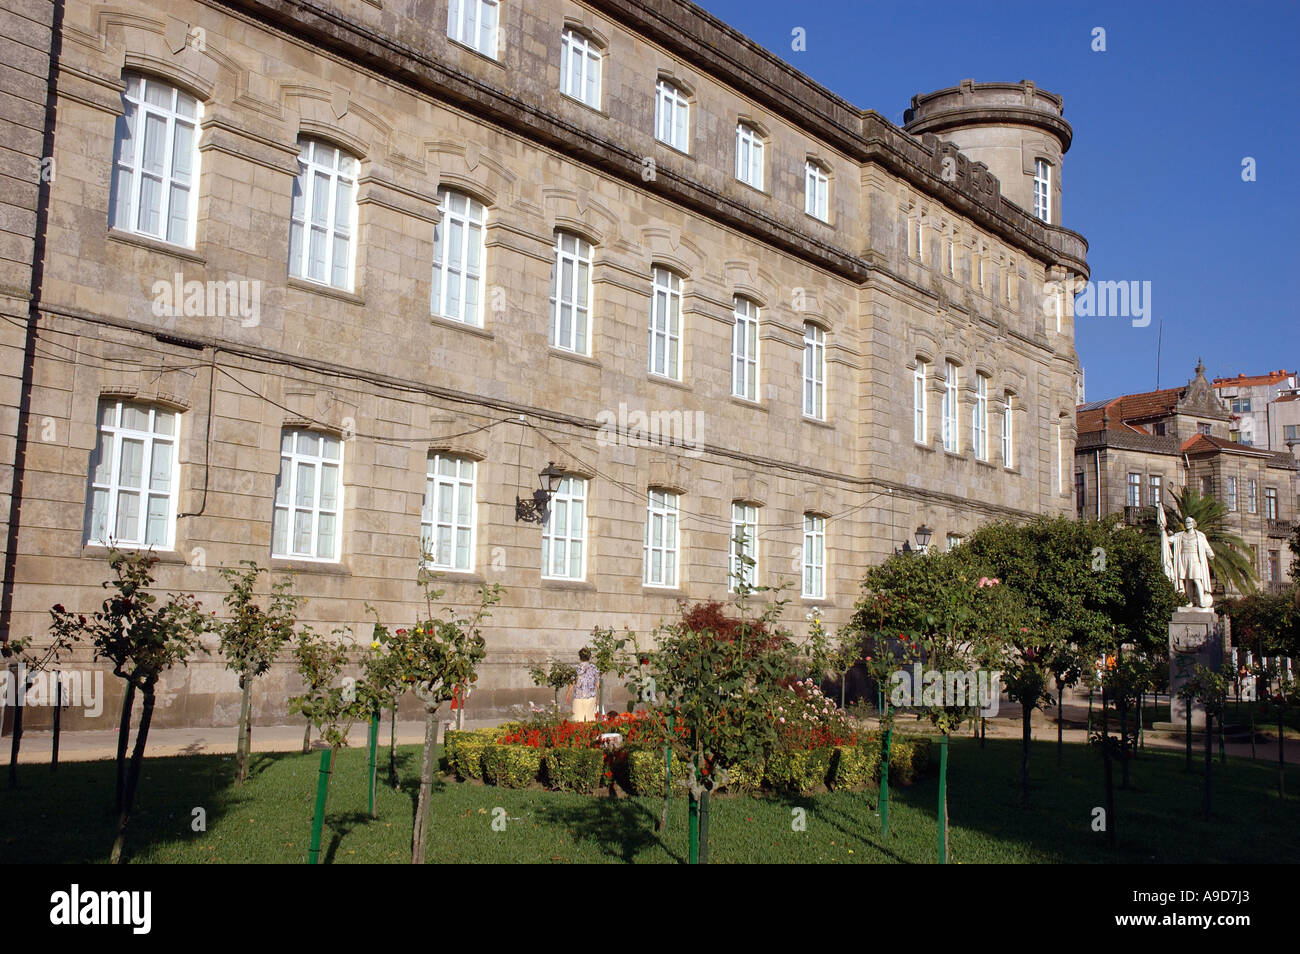 Ansicht eines historischen Gebäudes im Zentrum alten Stadt Pontevedra Galizien Spanien iberischen Halbinsel Iberia España Europa Stockfoto